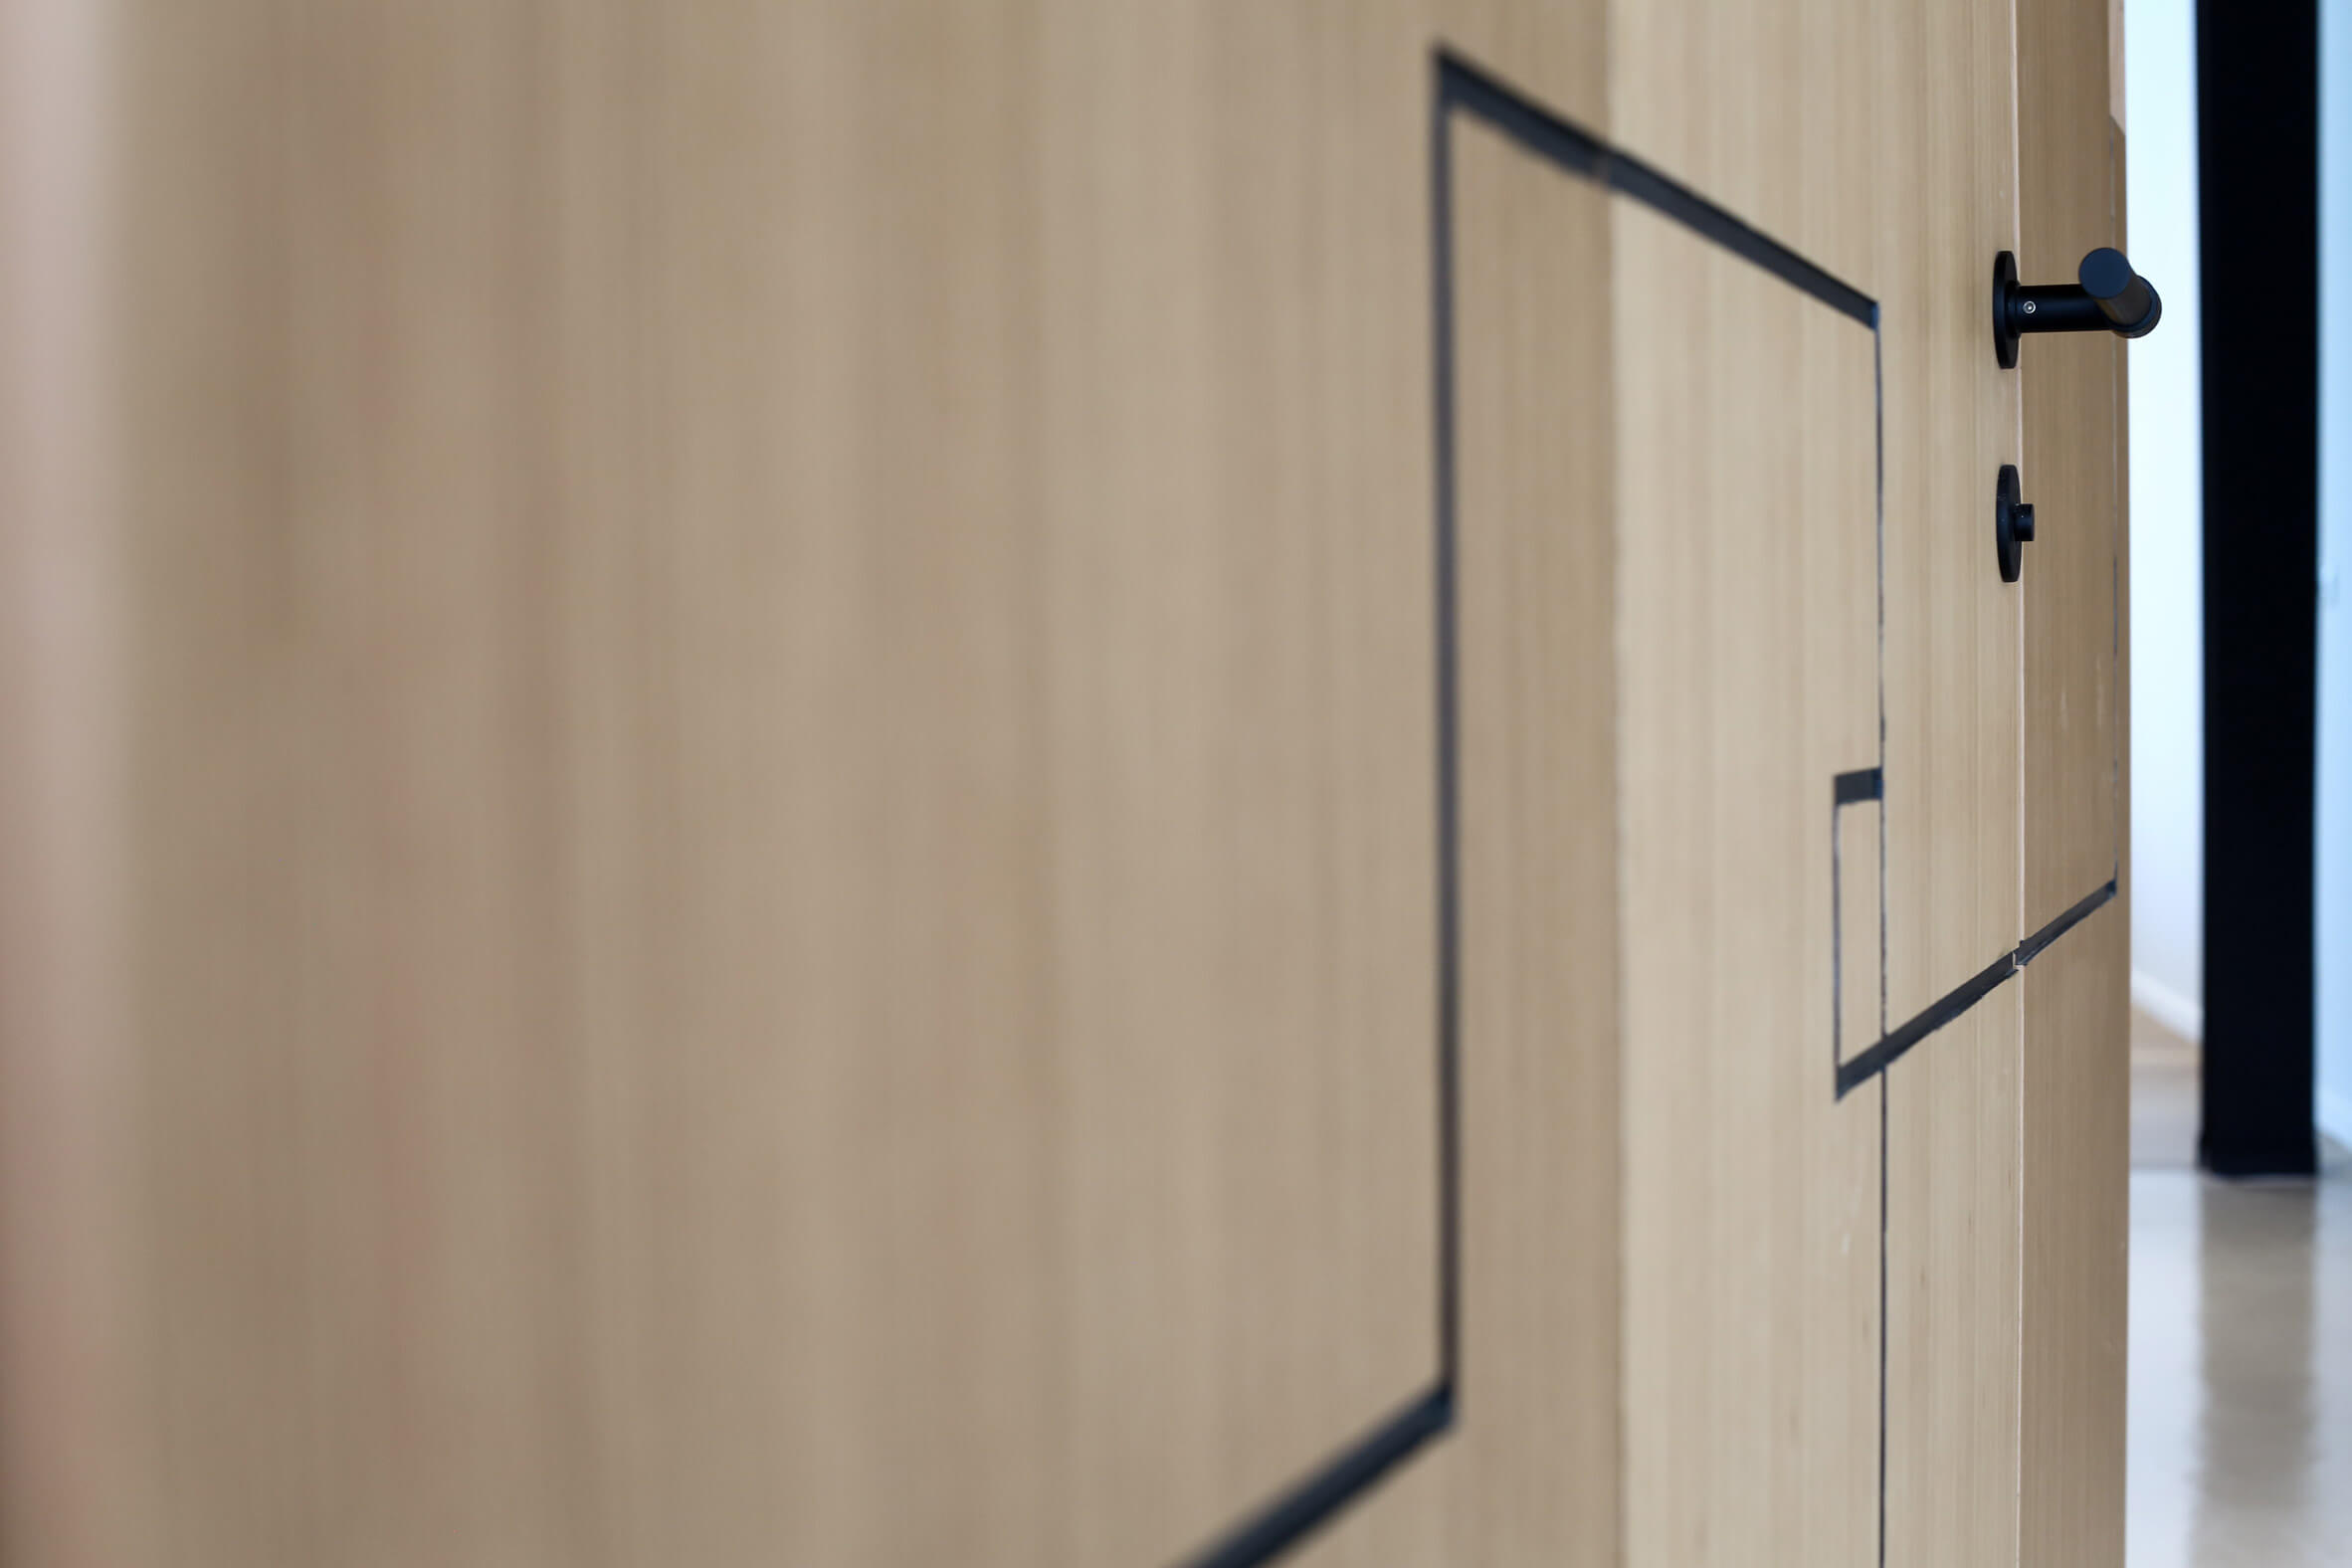 Apartamento de 1950 ganha reforma e ambientes integrados - Porta painel de madeira